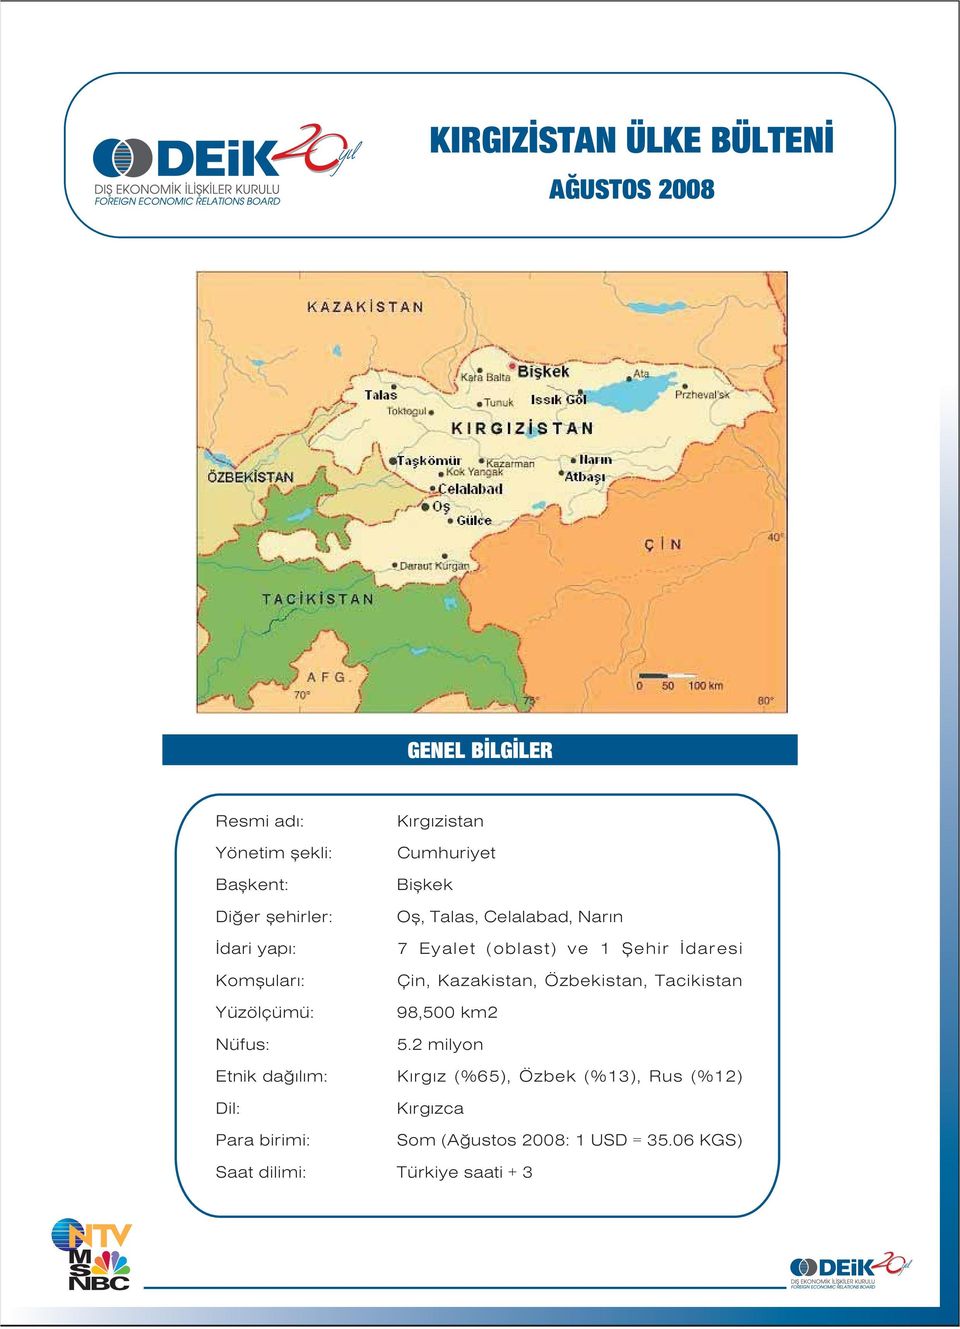 : Çin, Kazakistan, Özbekistan, Tacikistan Yüzölçümü: 98,500 km2 Nüfus: 5.